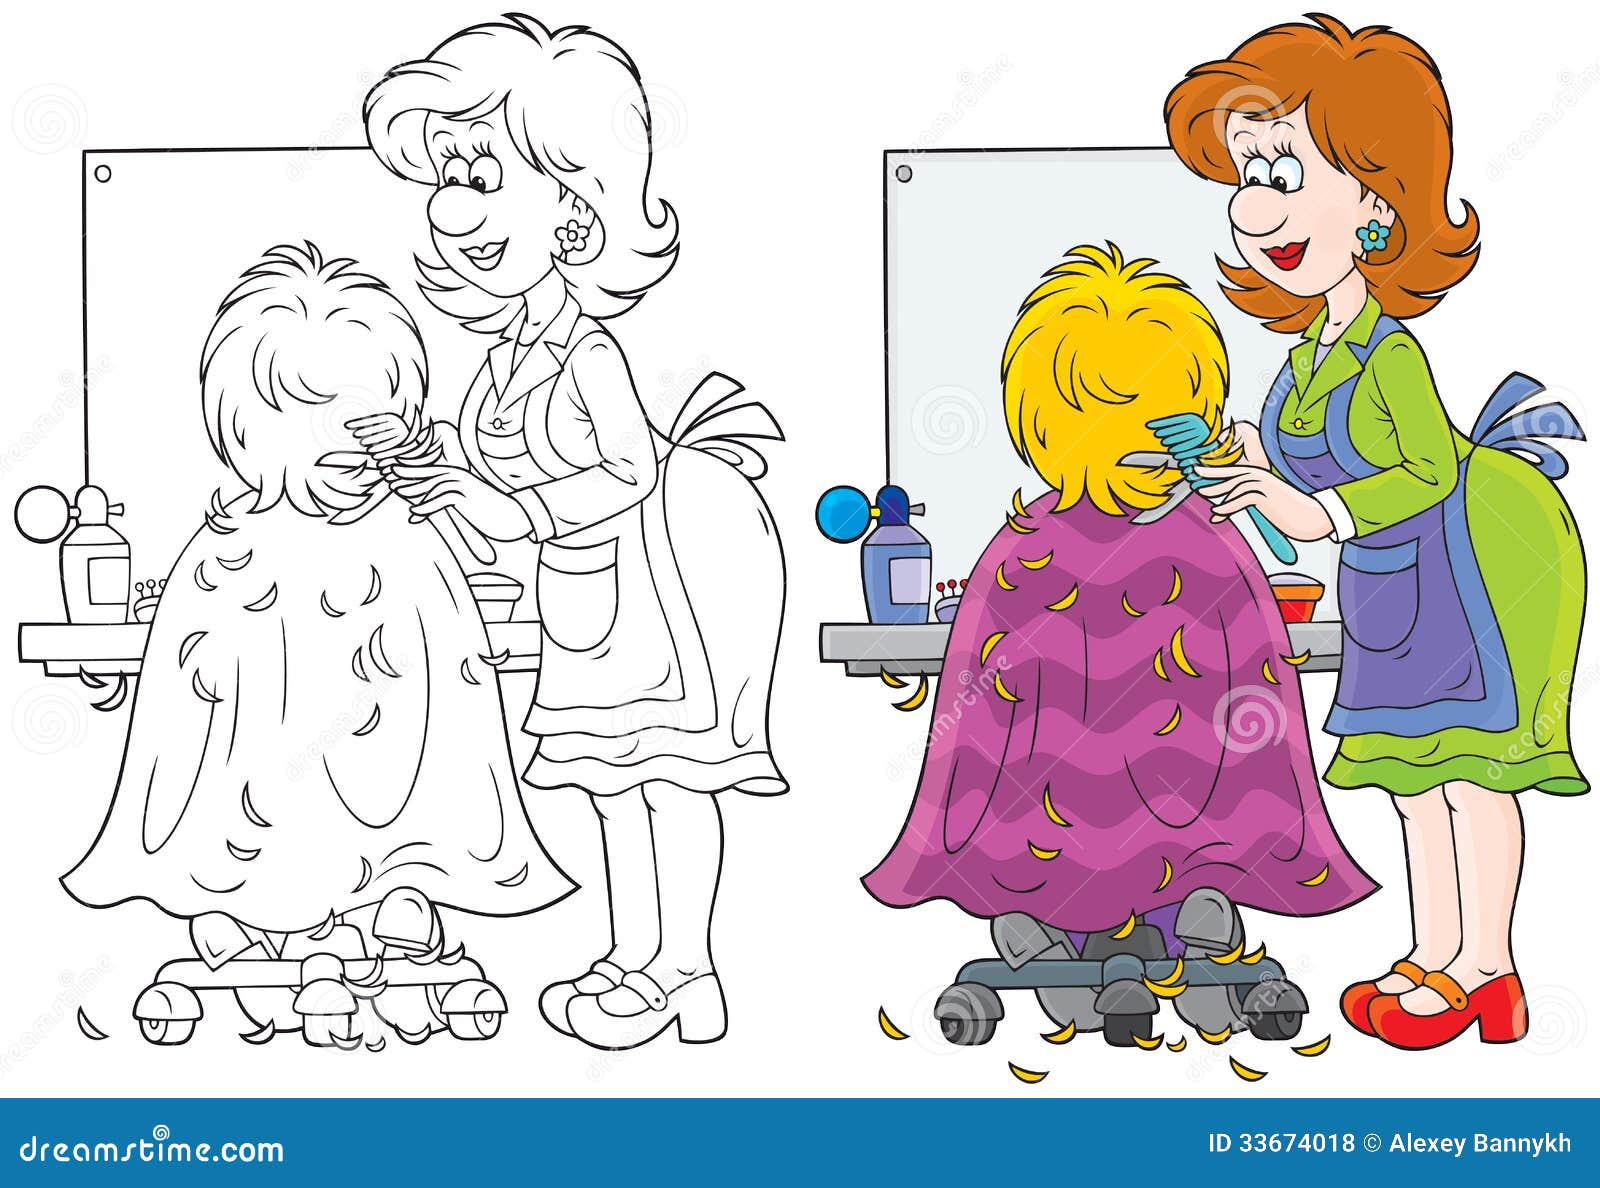 Иллюстрации парикмахер для детей дошкольного возраста